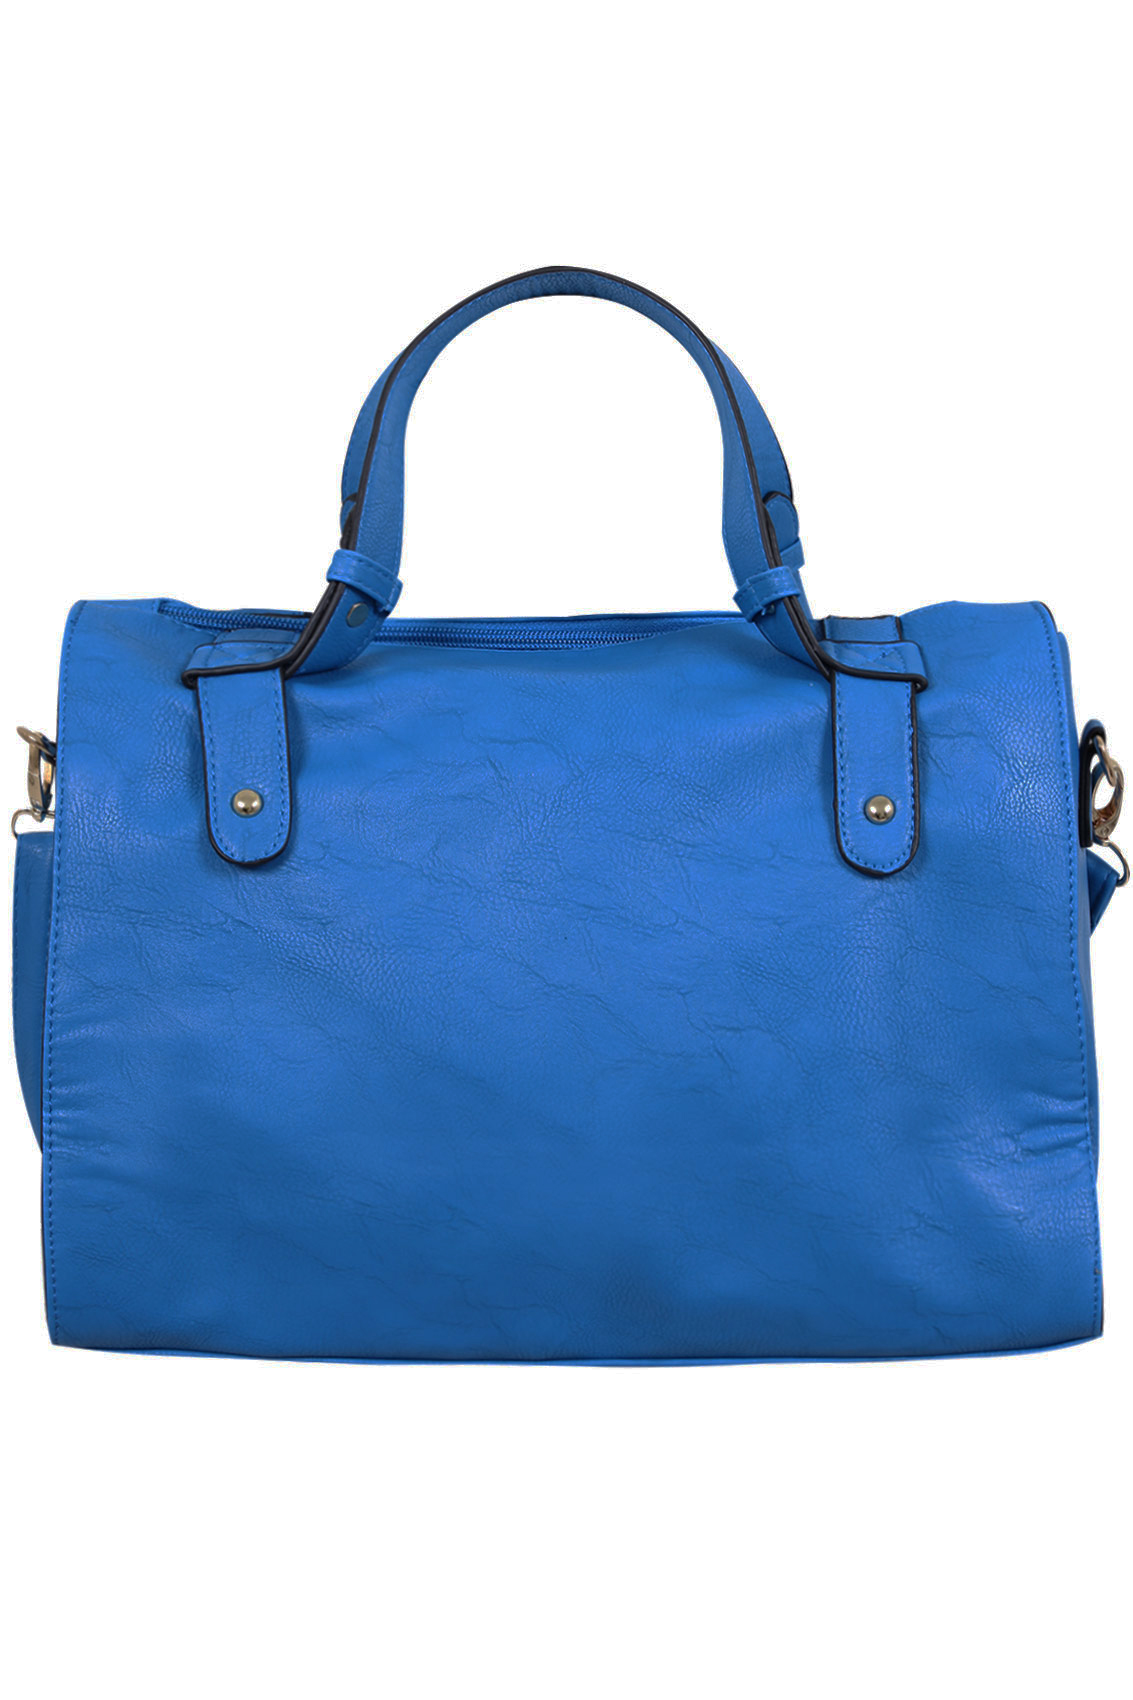 Cobalt Blue studded Tote Bag With Zip Pocket Front